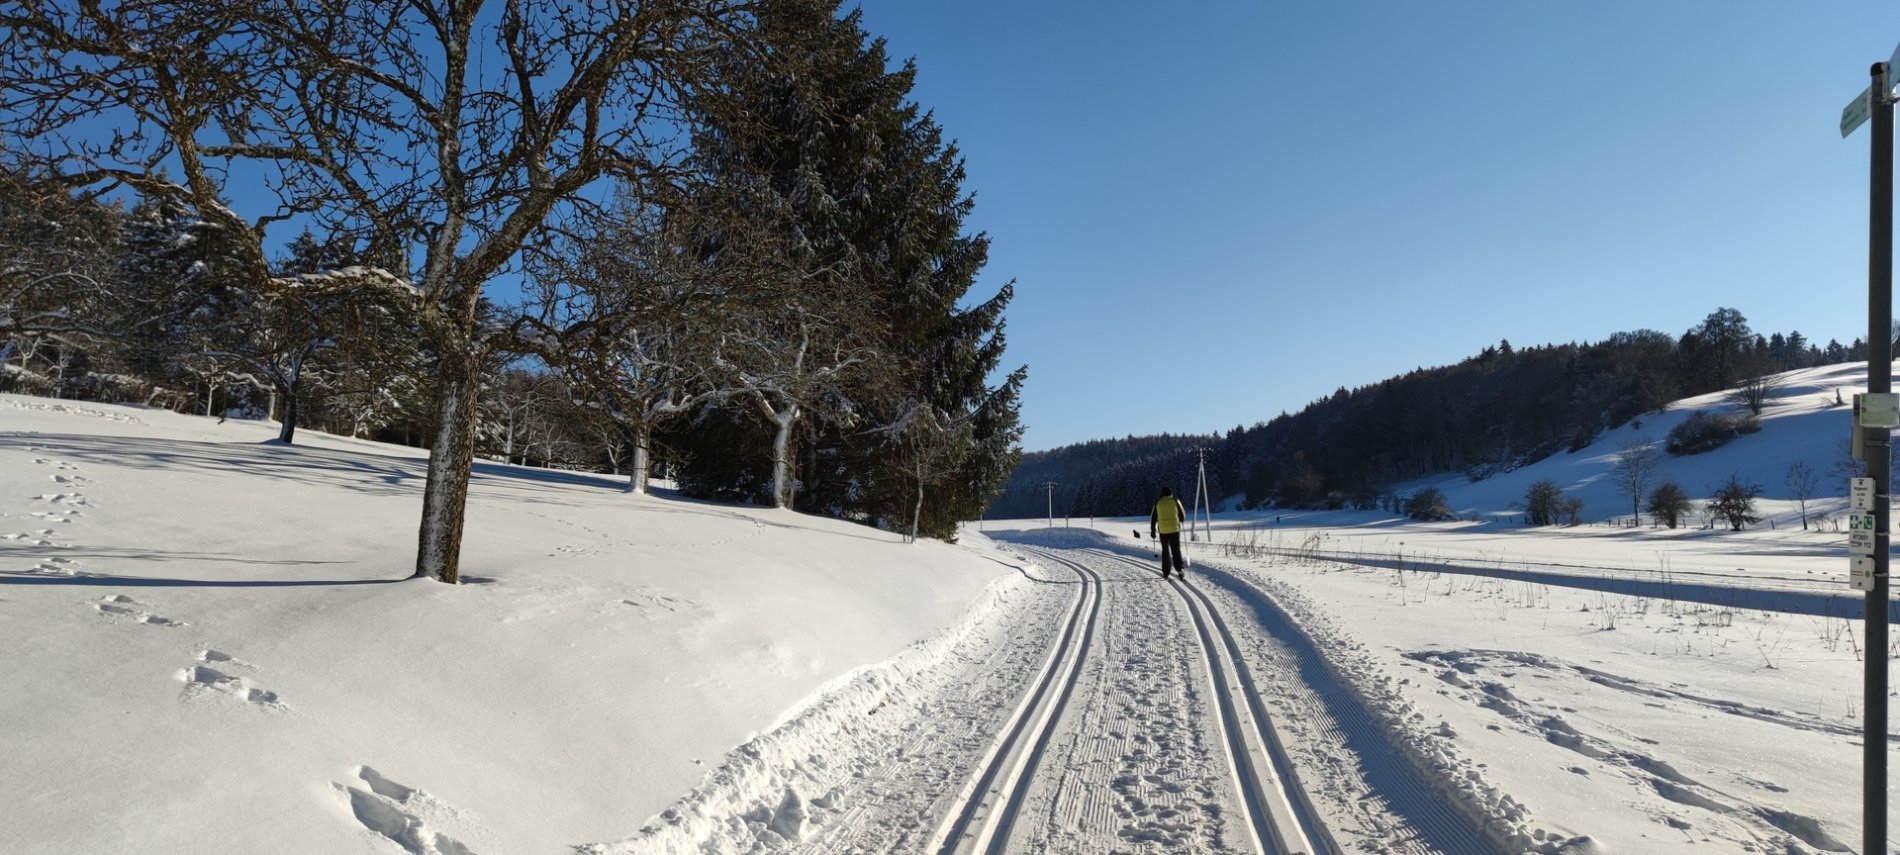 Die Heutal-Loipe in Münsingen im Biosphärengebiet Schwäbische Alb. Eine Person mit gelber Jacke fährt mit klassischen Langlaufski auf der Loipe, bei der zwei Spuren parallel verlaufen. Ringsherum ist die verschneite Landschaft mit einigen Bäumen und Wald.